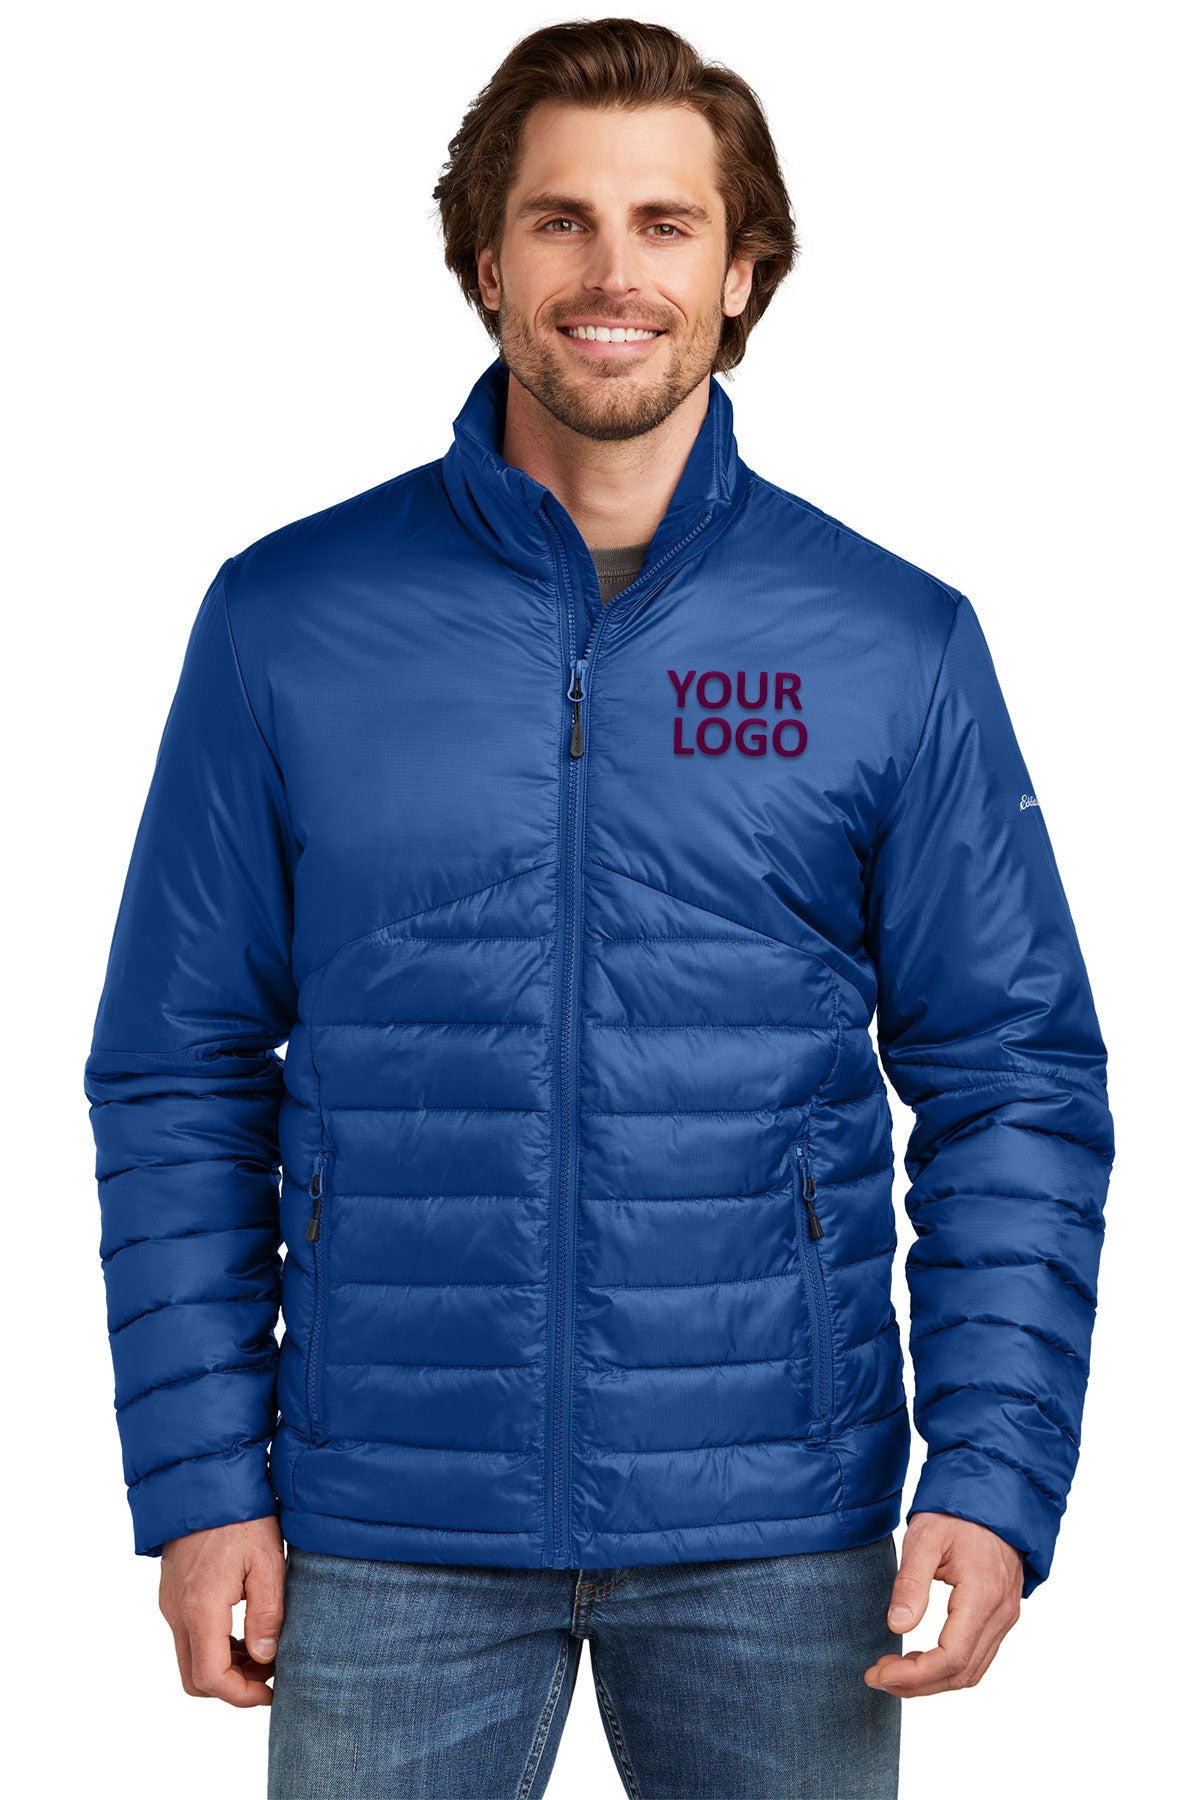 Eddie Bauer Cobalt Blue EB510 business jackets with logo